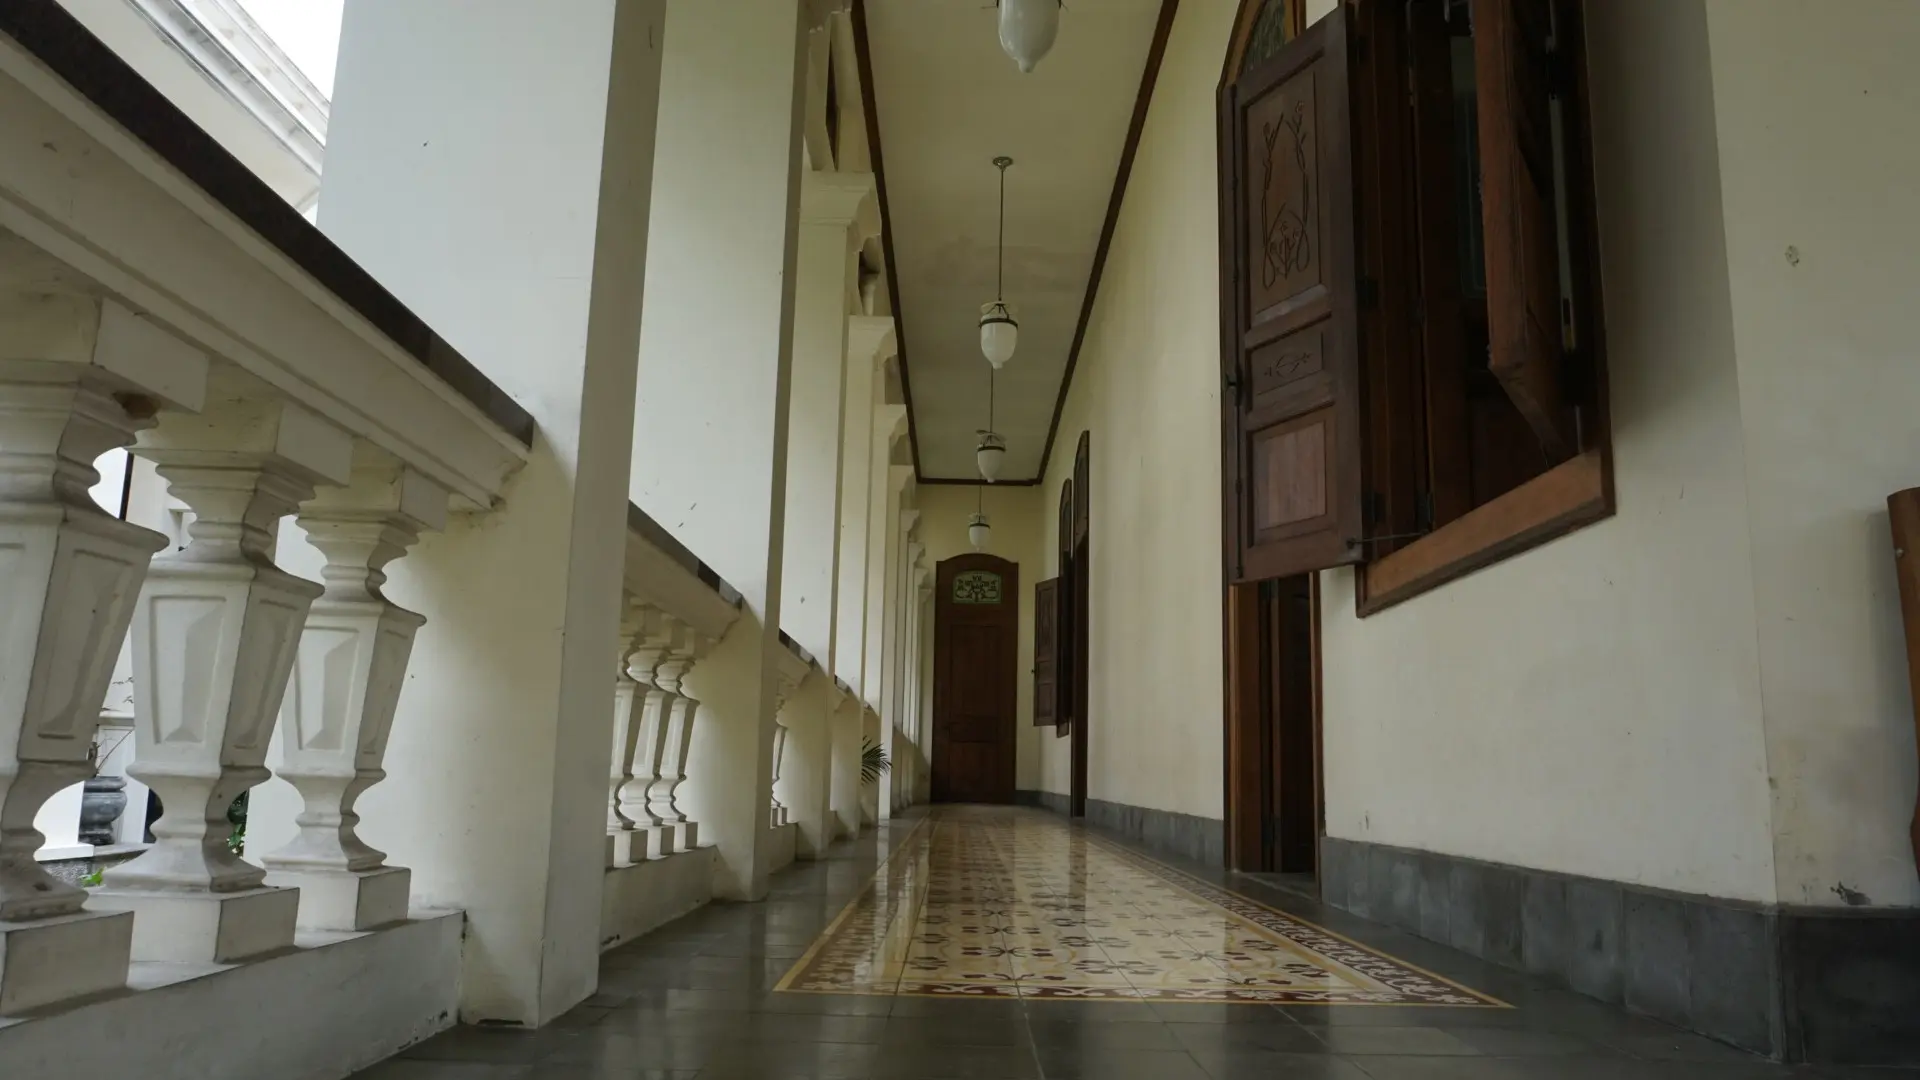 KPK menghibahkan bangunan rumah hasil rampasan milik eks Kakorlantas Djoko Susilo kepada Pemkot Solo yang akan dimanfaatkan menjadi Museum Batik.(Liputan6.com/Fajar Abrori)